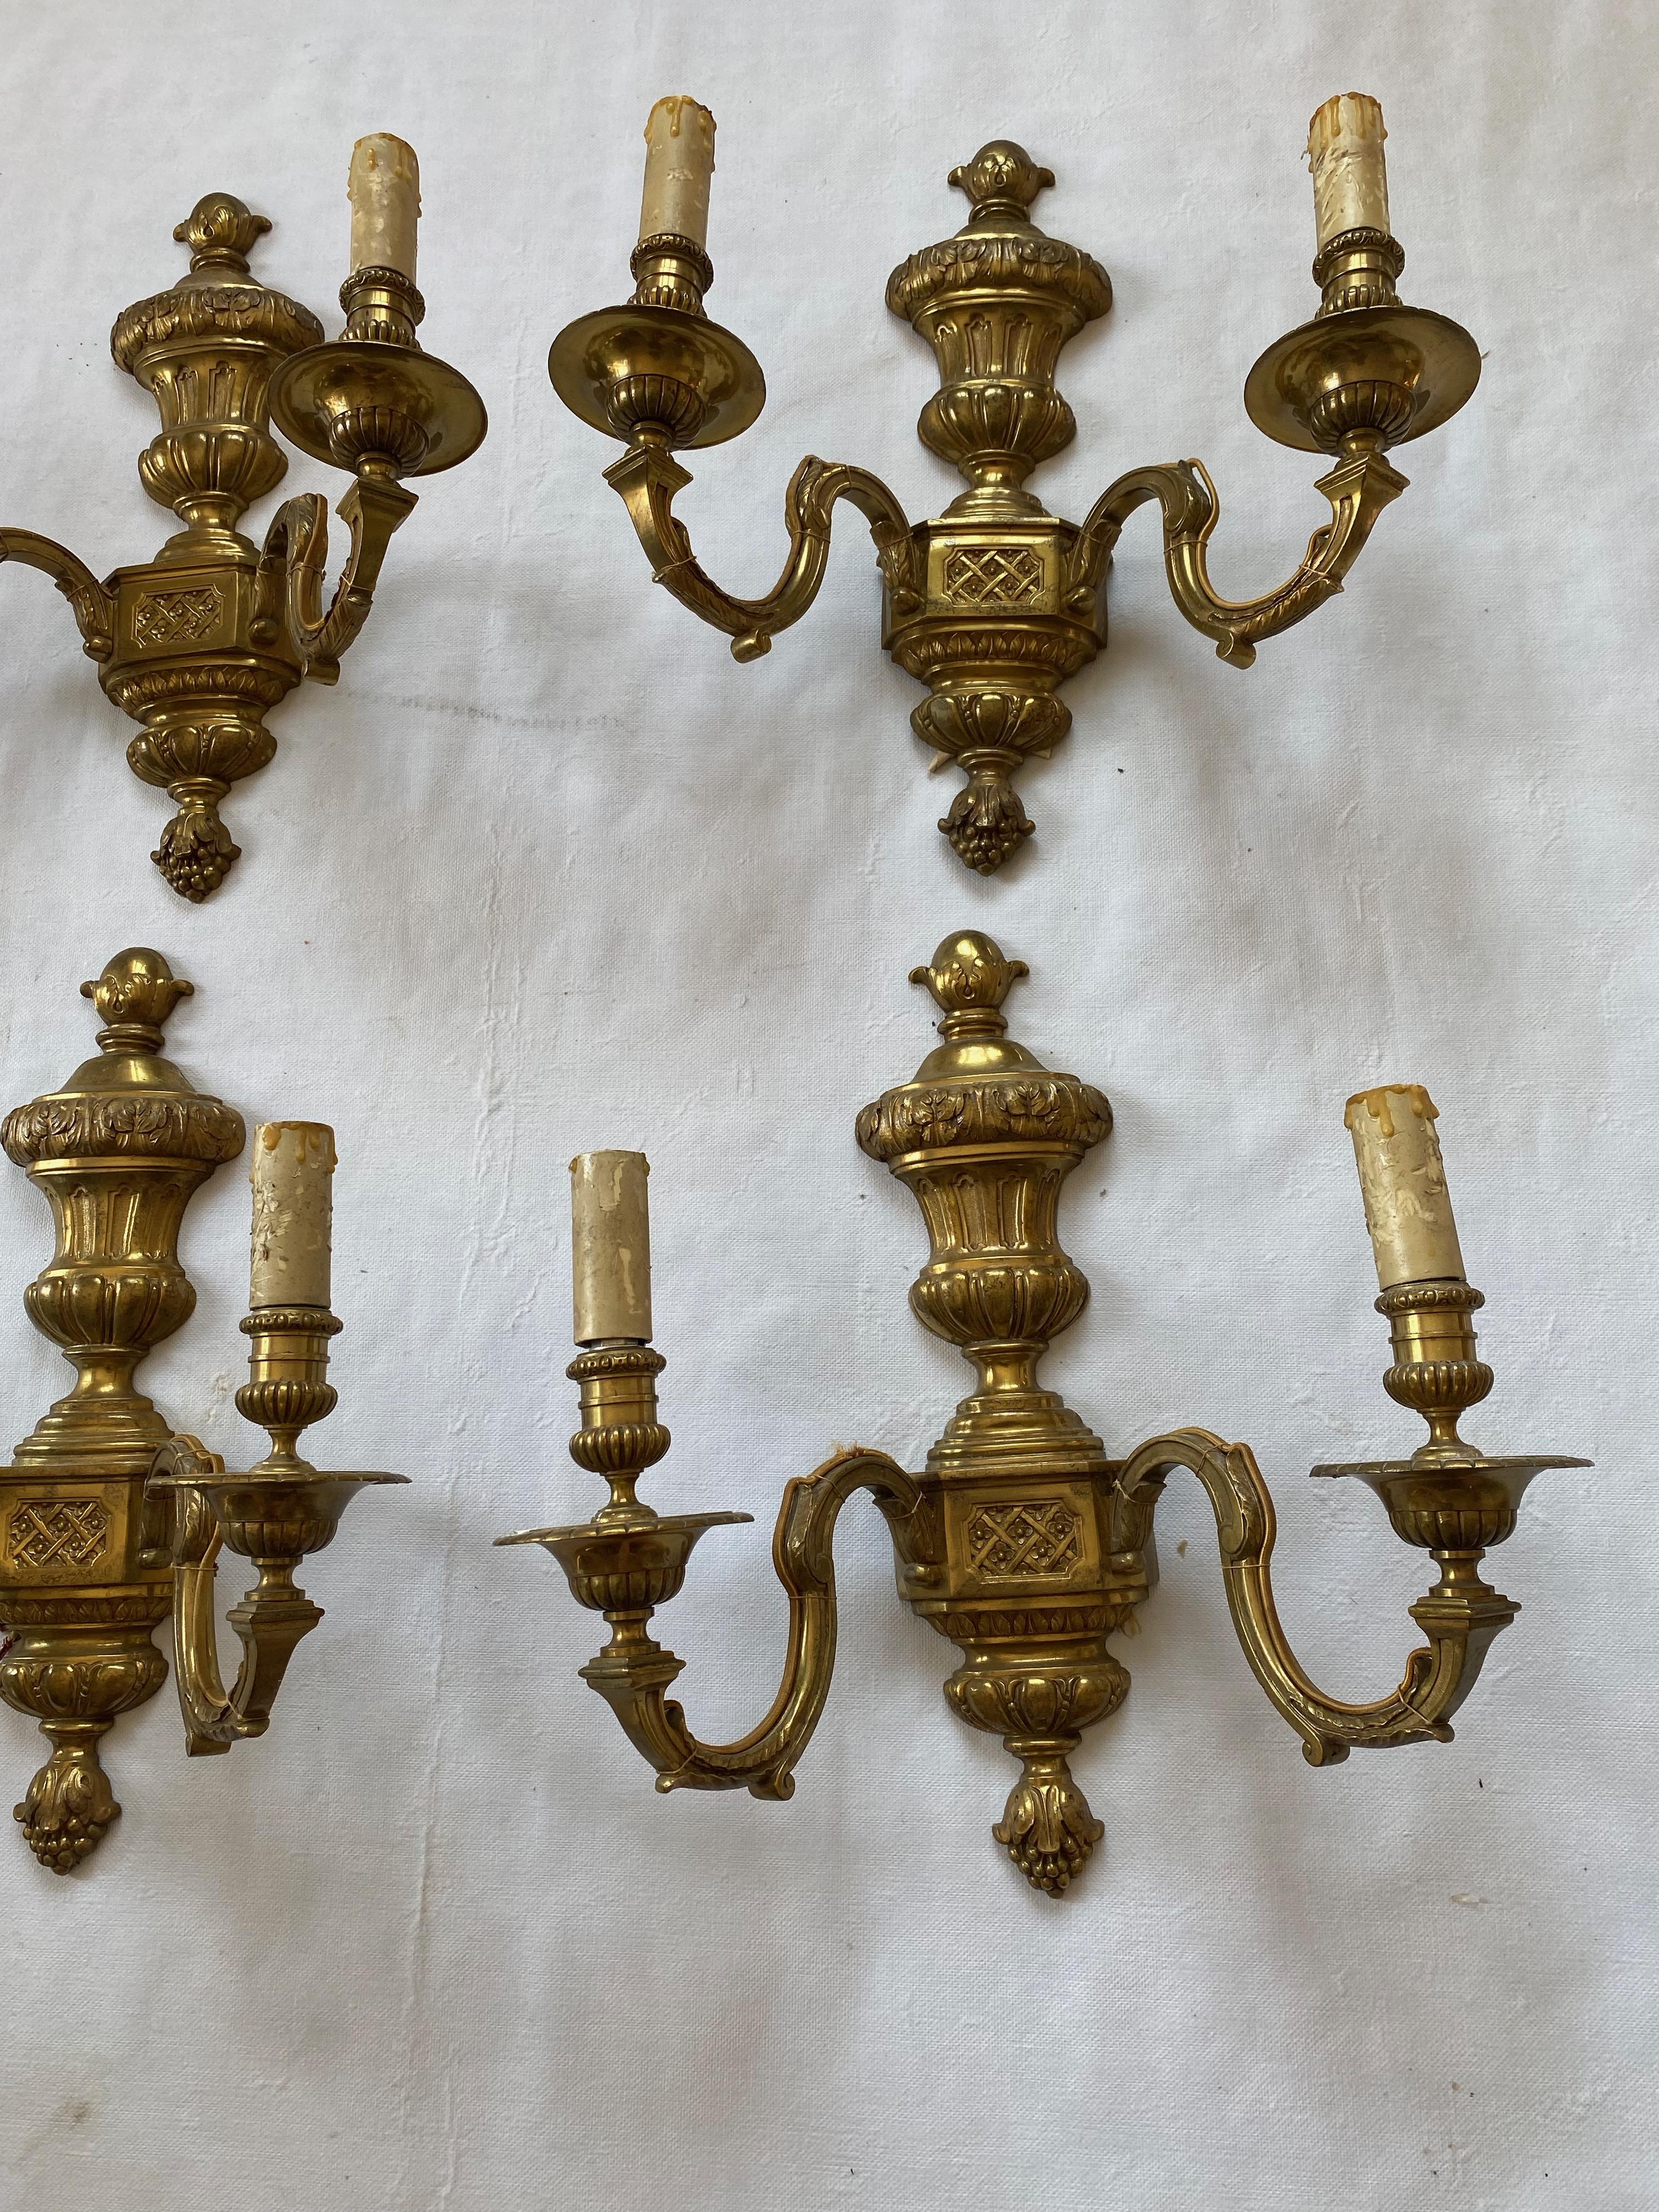 Serie von 6 Wandleuchten aus vergoldeter Bronze, Stil Louis 16, 2 Glühbirnen E 14 pro Wandleuchte, Label Maison Baguès auf der Rückseite
Höhe:39cm
Breite: 36cm
Tiefe: 18cm